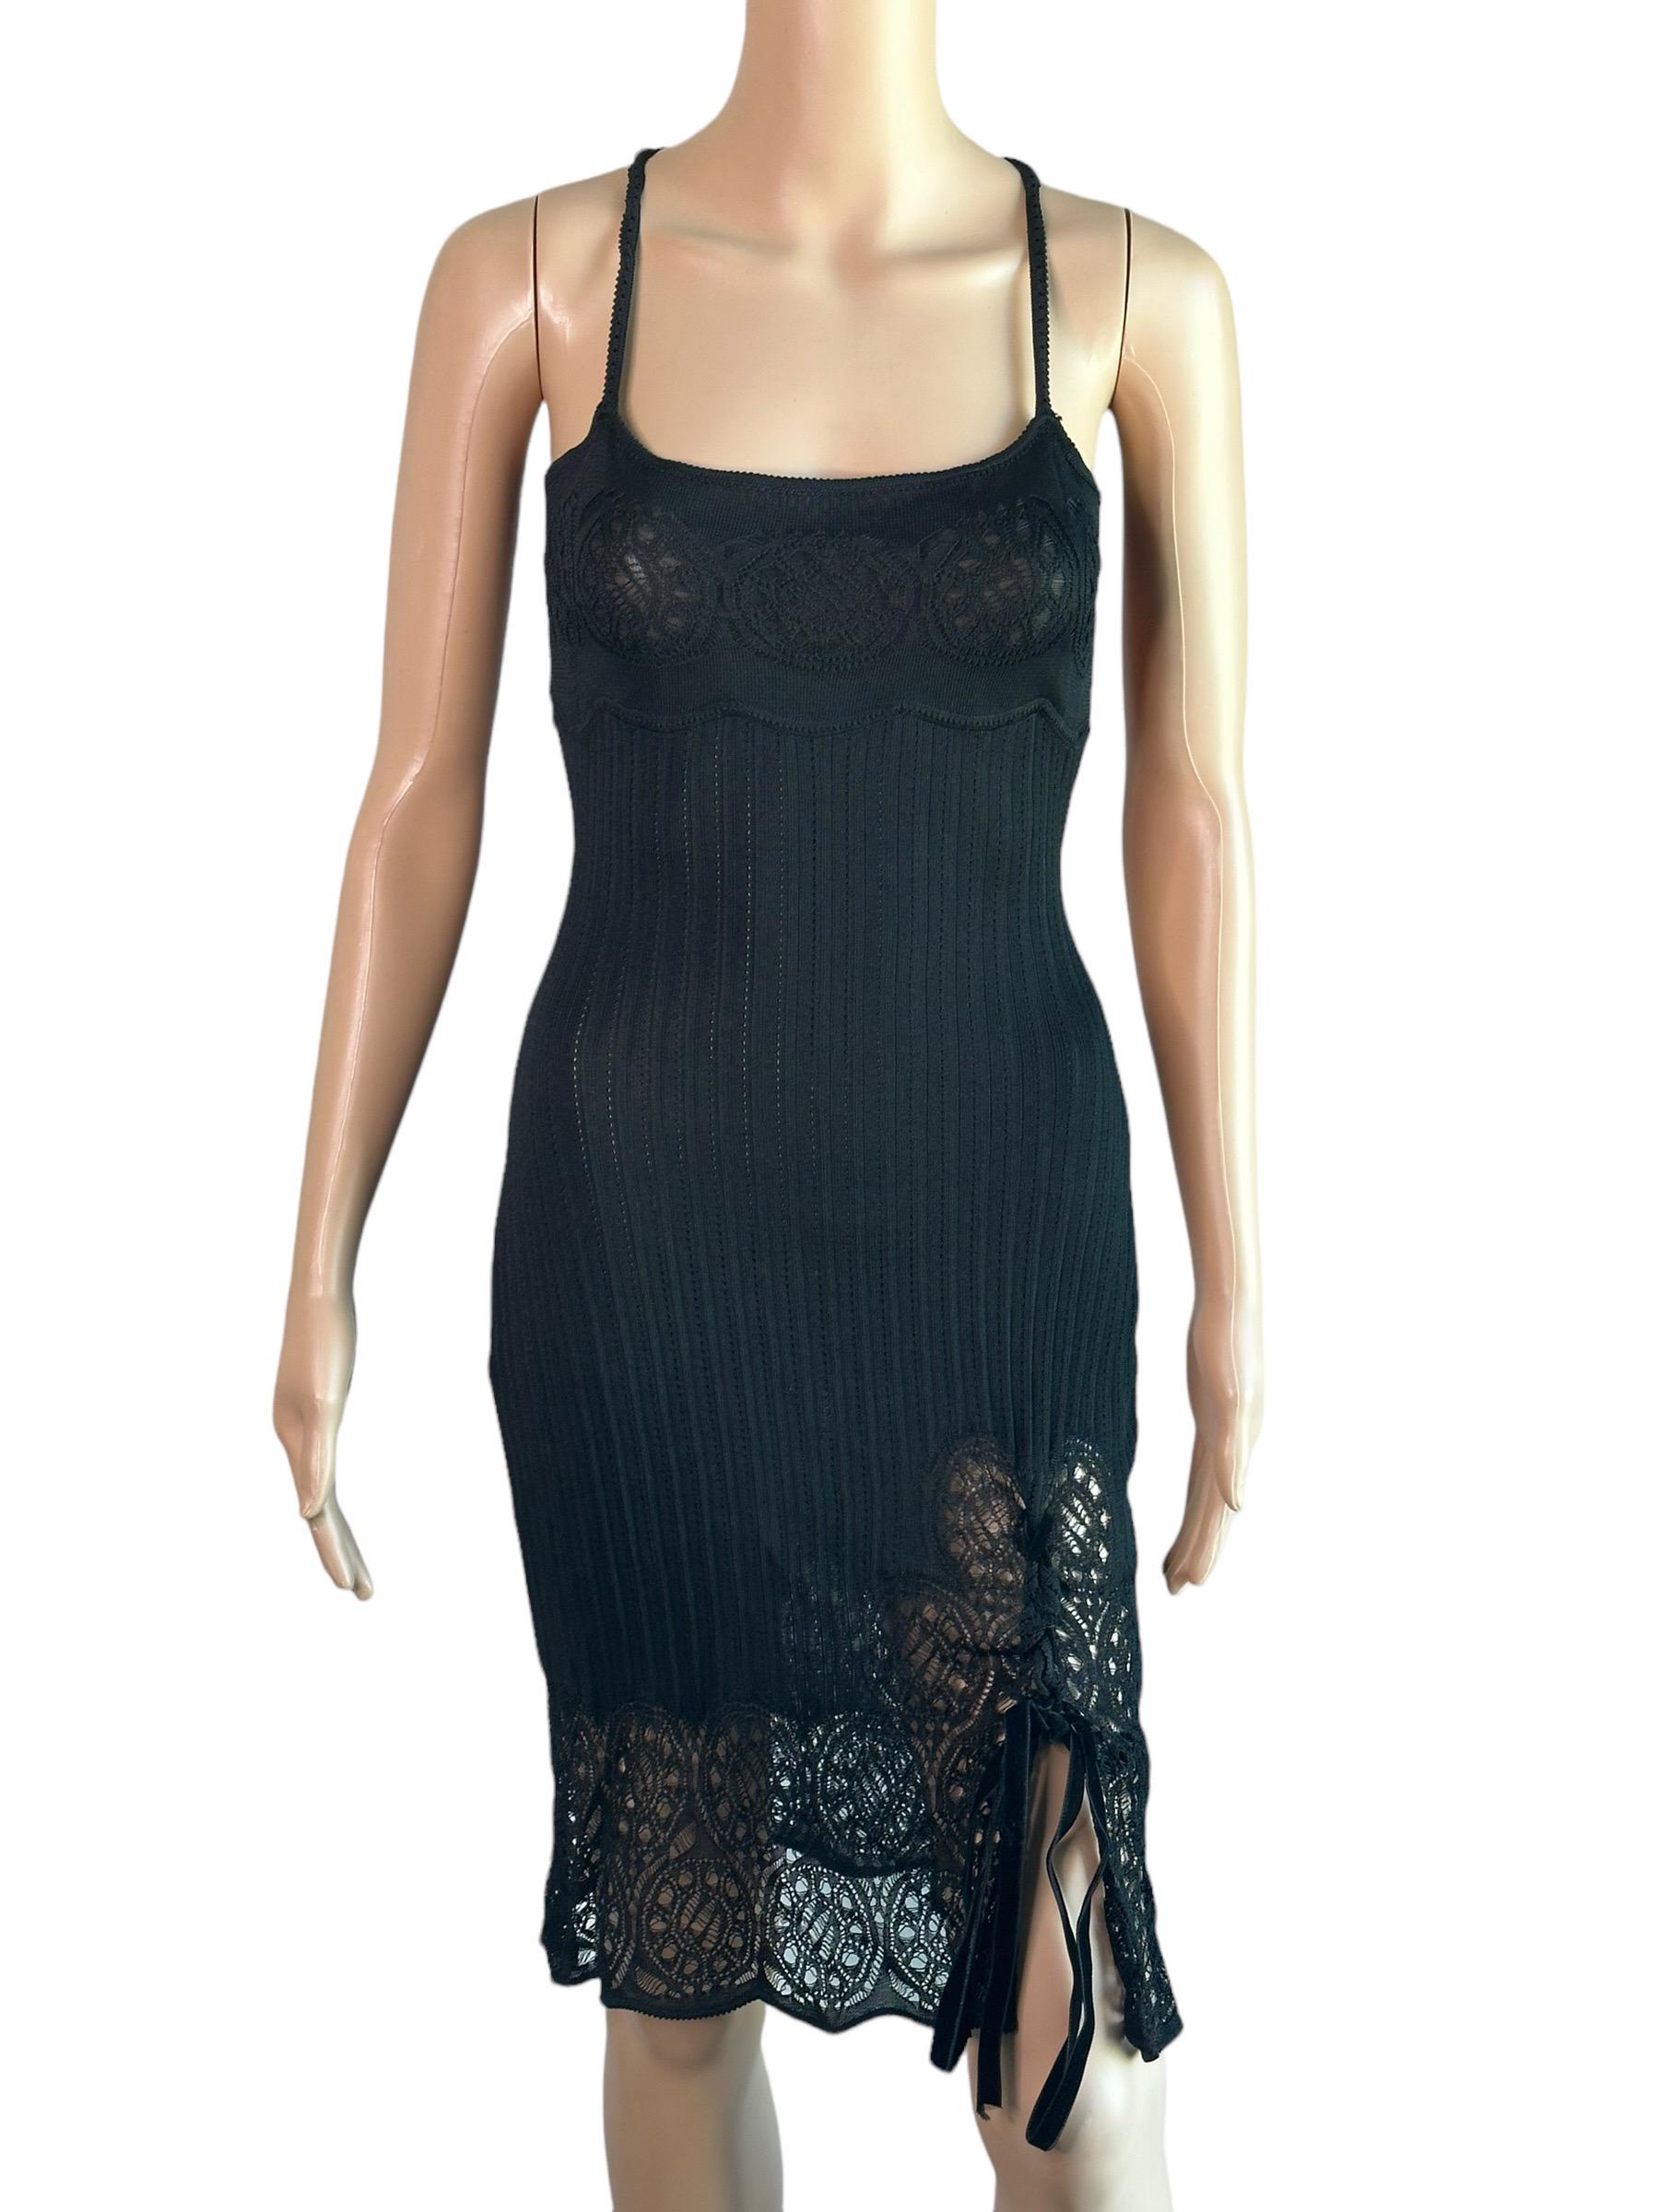 Women's or Men's John Galliano S/S 1999 Sheer Lace Open Knit Black Mini Dress For Sale